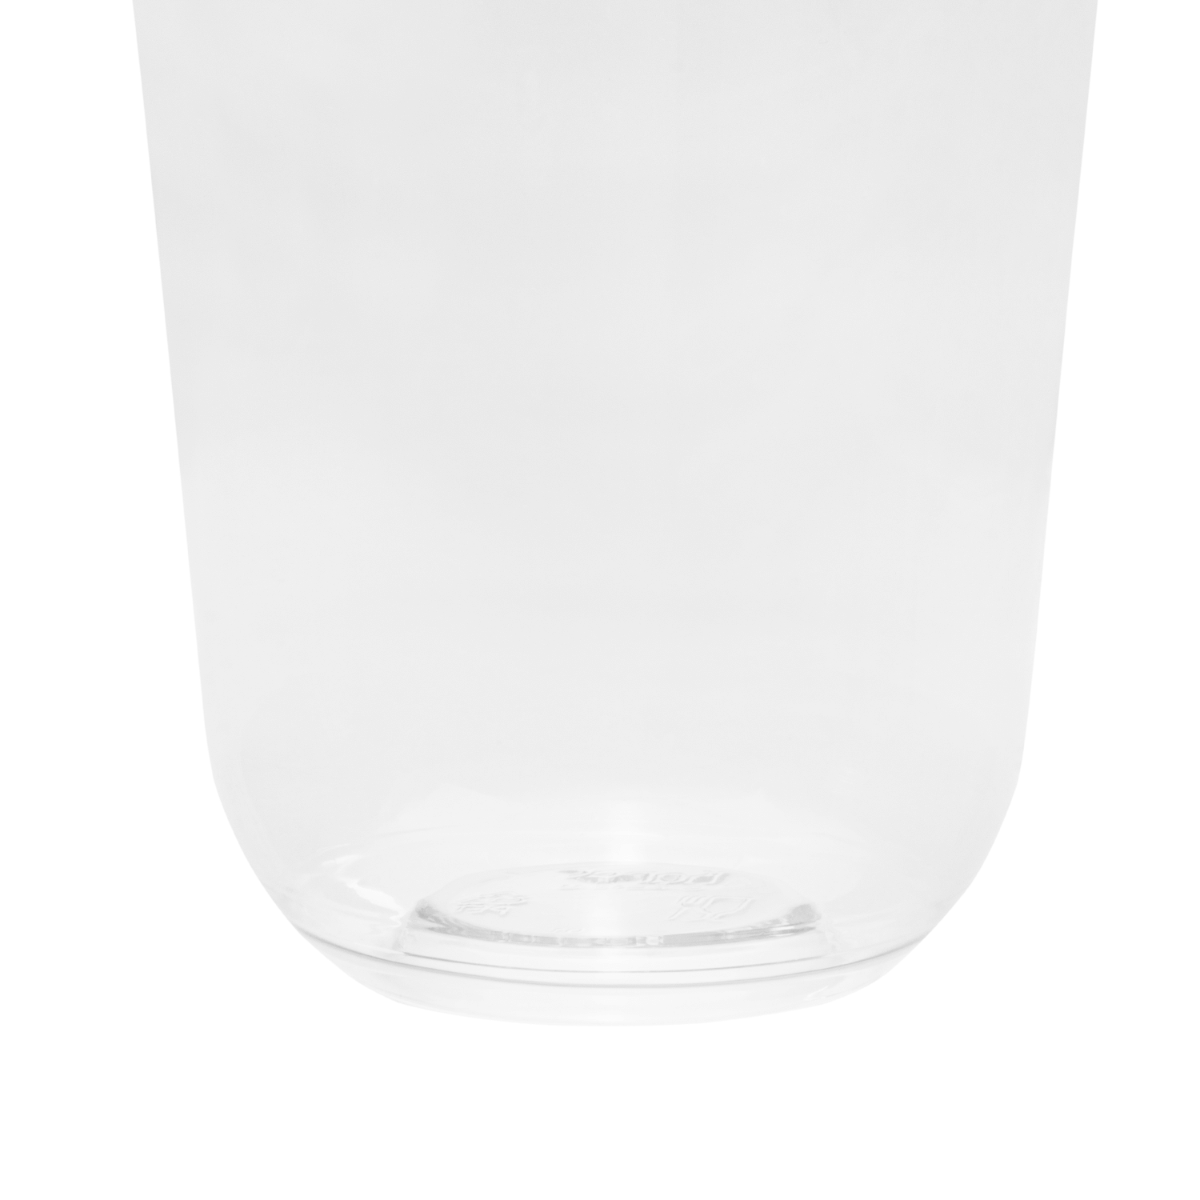 20 oz Clear PET Plastic Cups, 98mm (1000/Case)